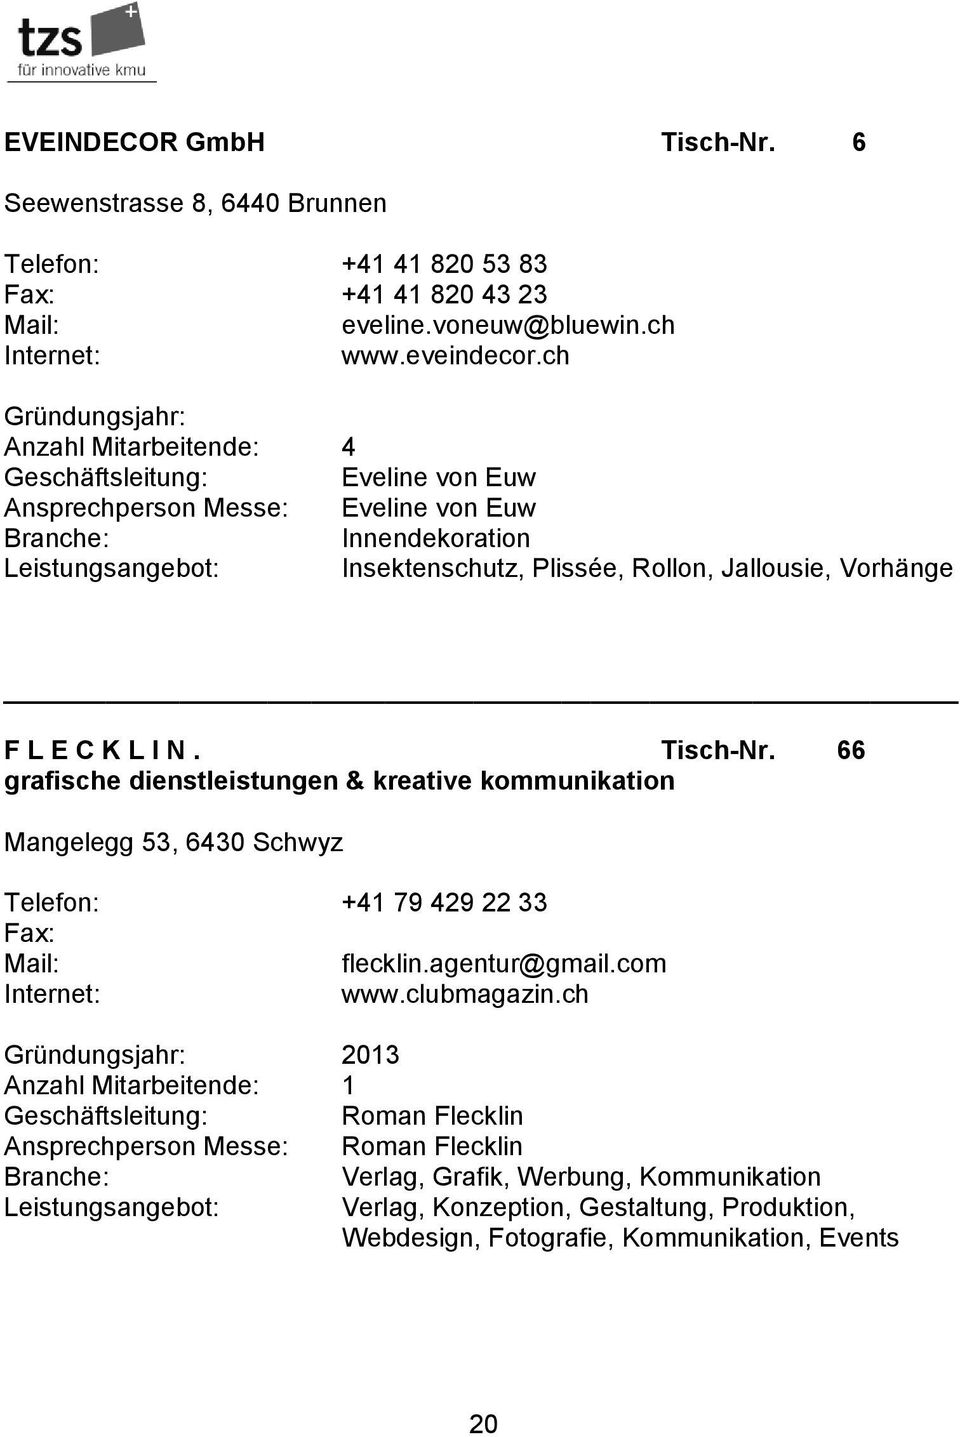 C K L I N. Tisch-Nr. 66 grafische dienstleistungen & kreative kommunikation Mangelegg 53, 6430 Schwyz Telefon: +41 79 429 22 33 Fax: flecklin.agentur@gmail.com www.clubmagazin.